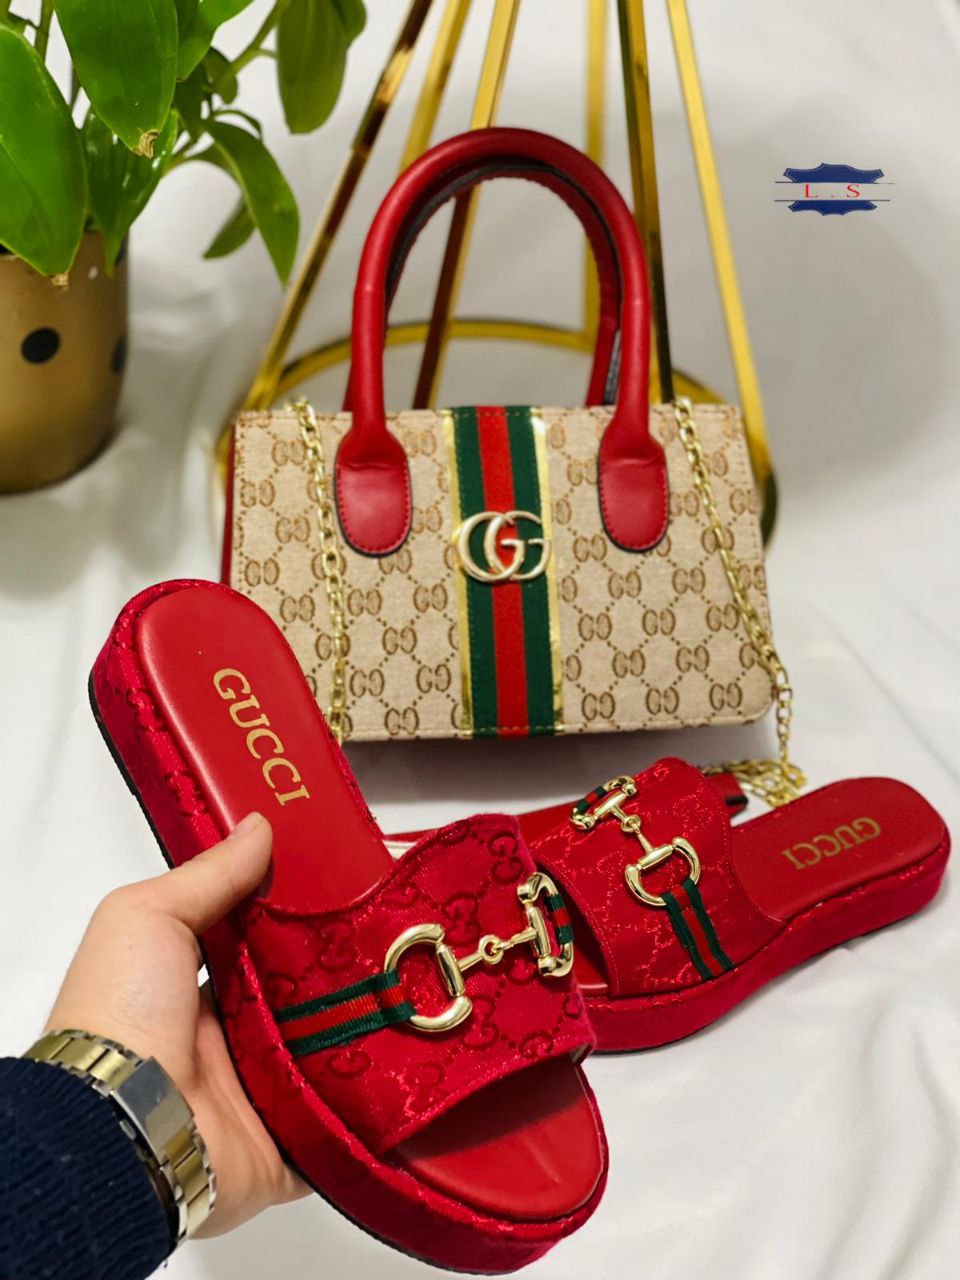 Gucci sandals and handbags